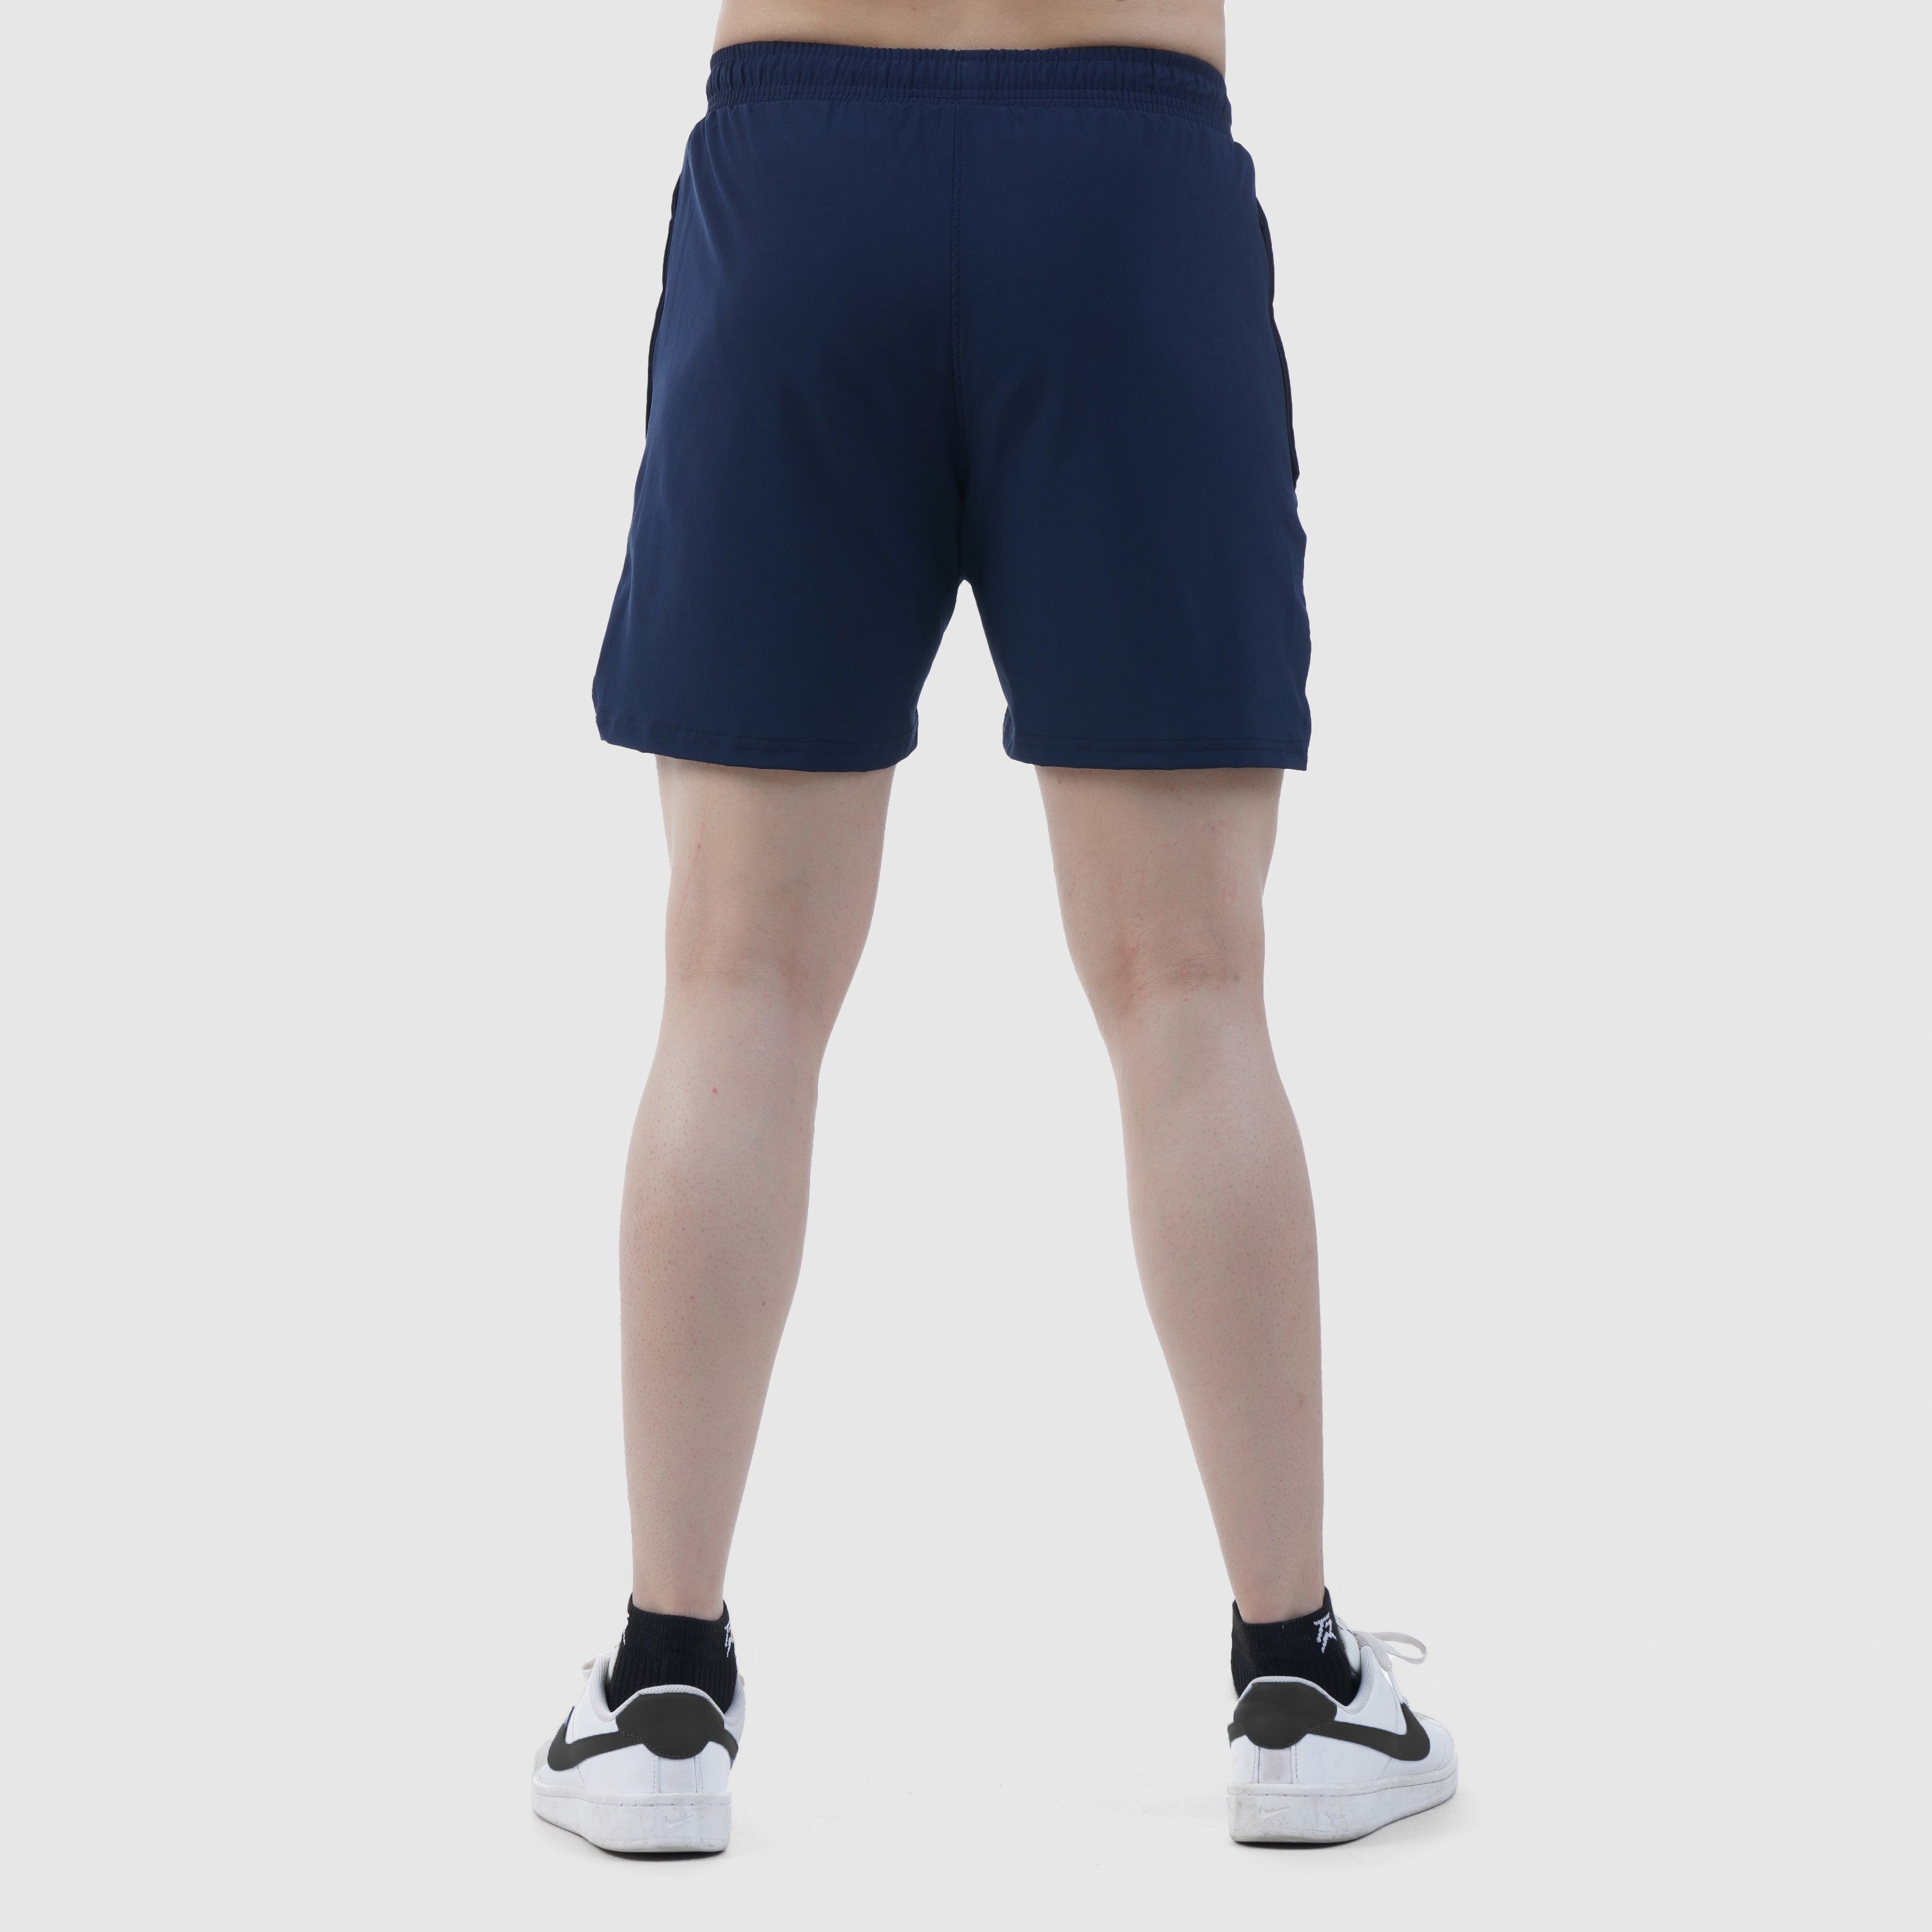 Double Edge Shorts (Navy)